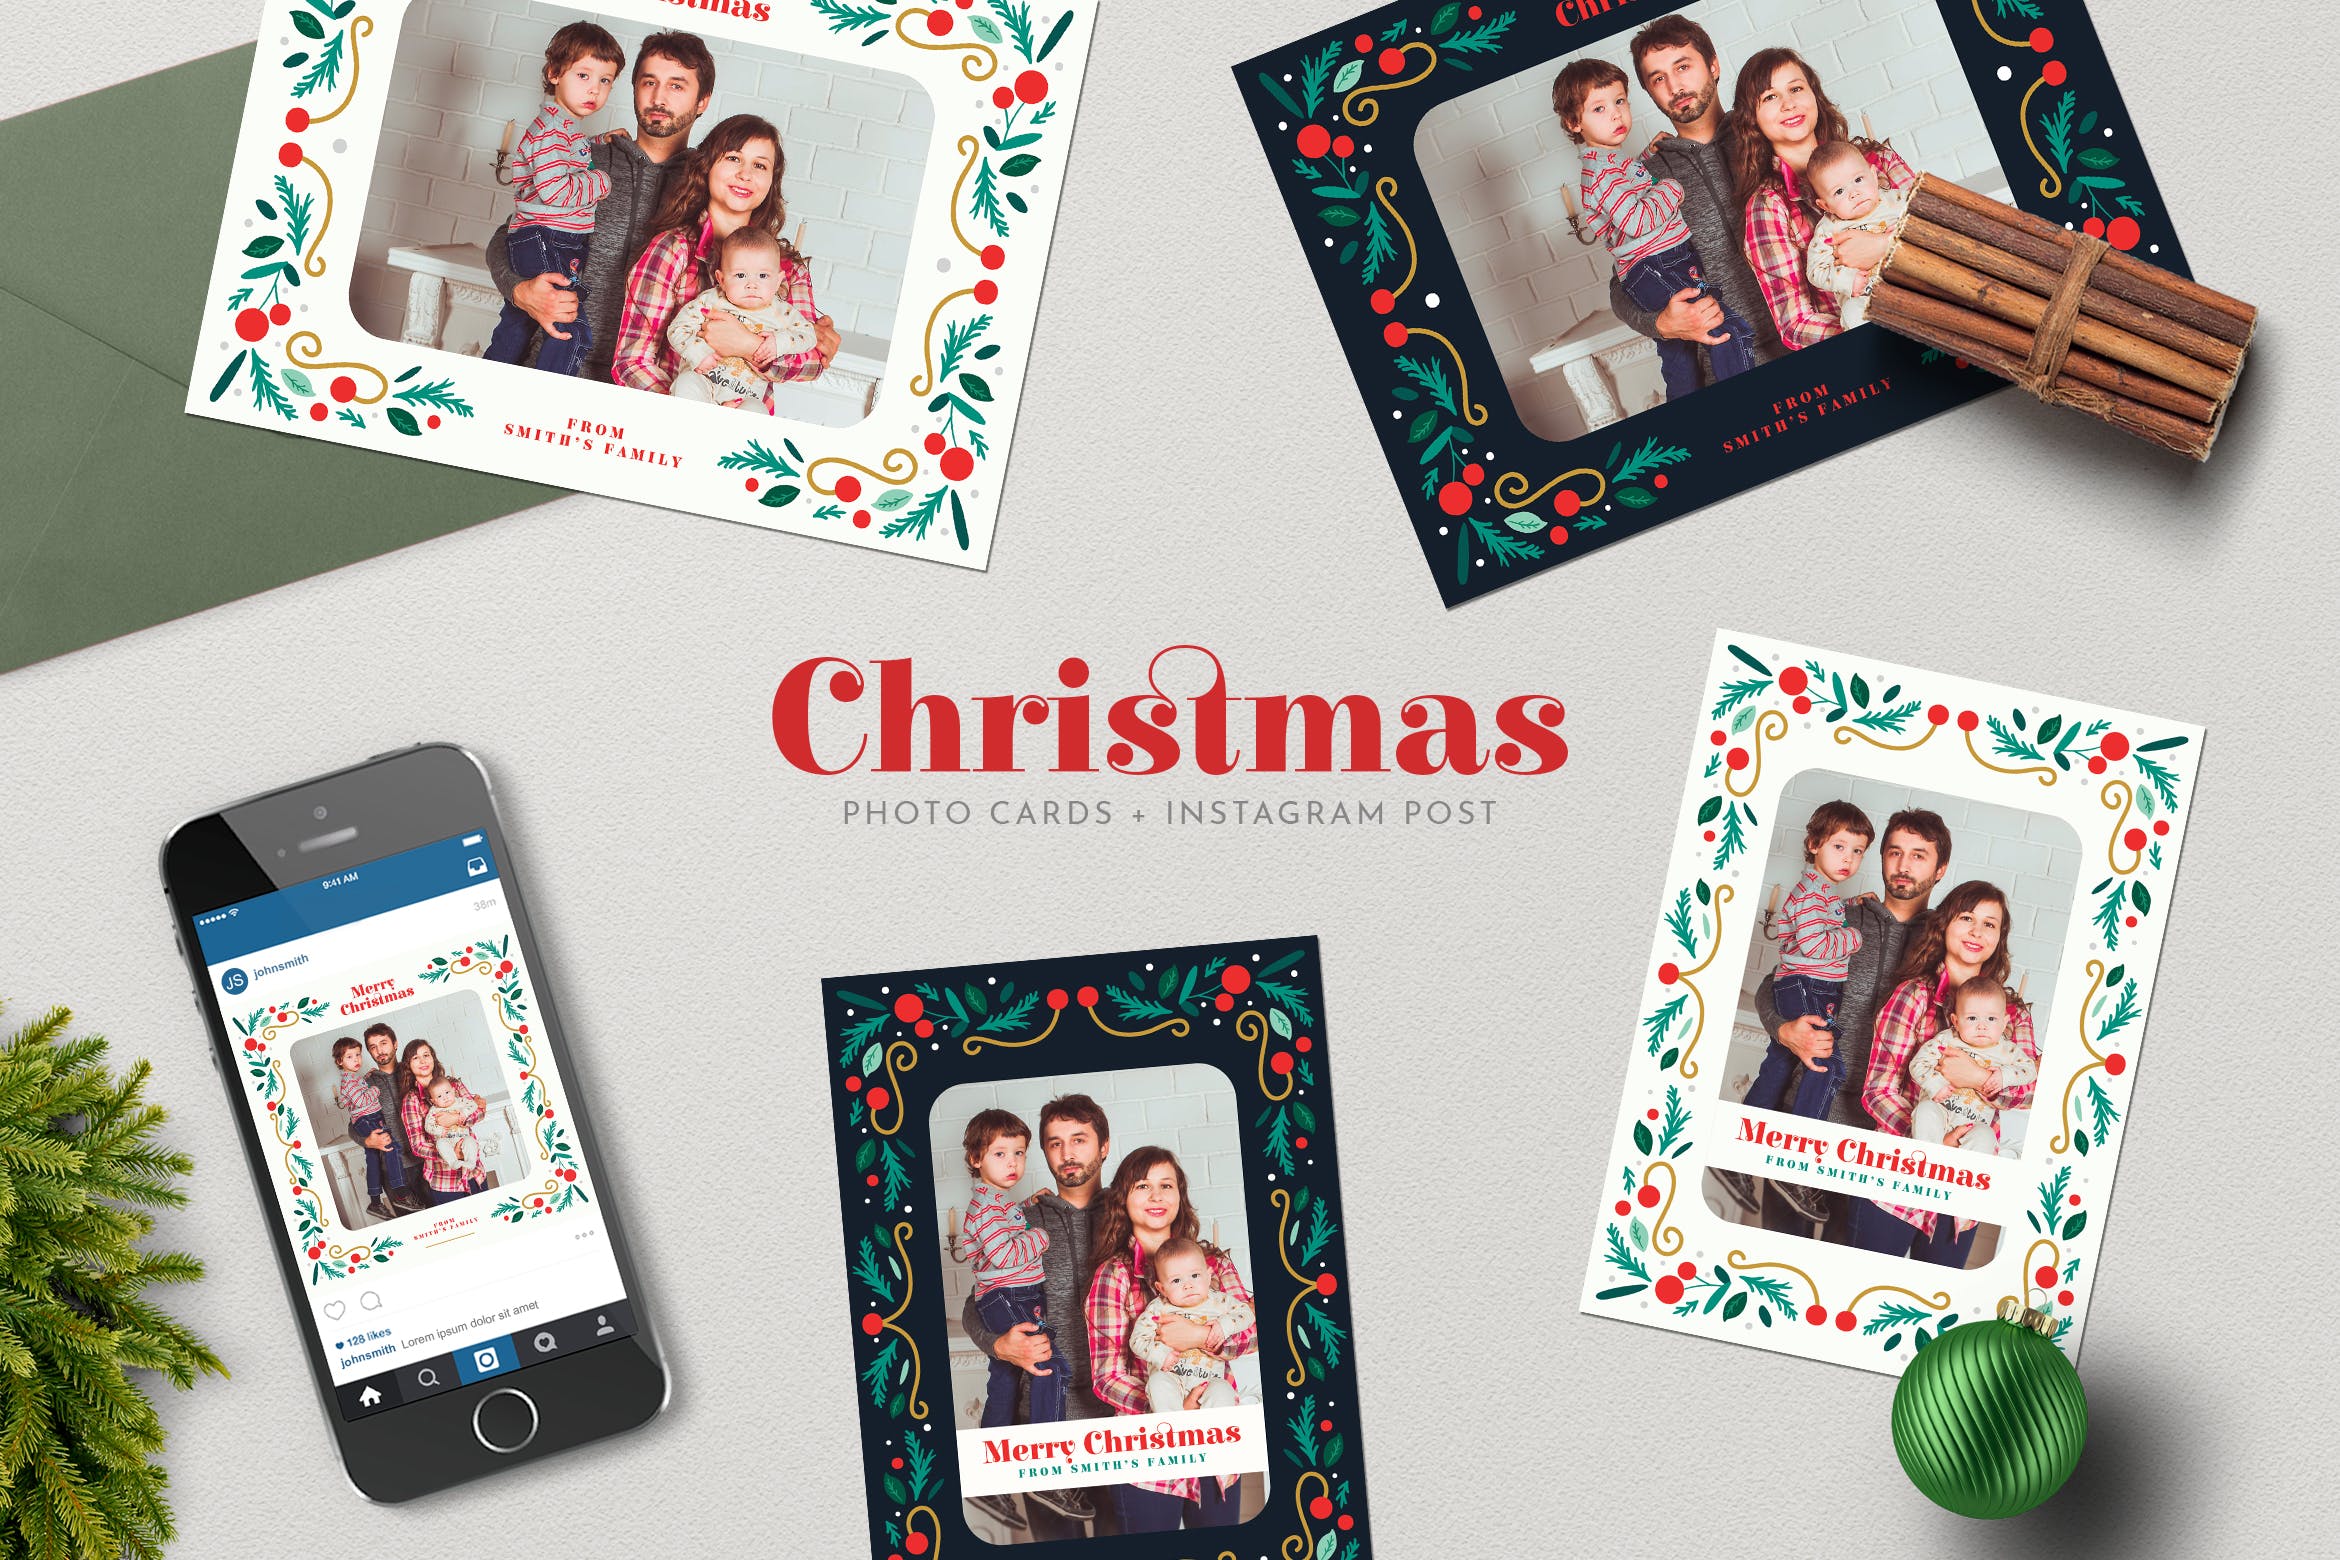 圣诞节照片明信片&Instagram贴图设计模板16设计网精选 Christmas PhotoCards +Instagram Post插图